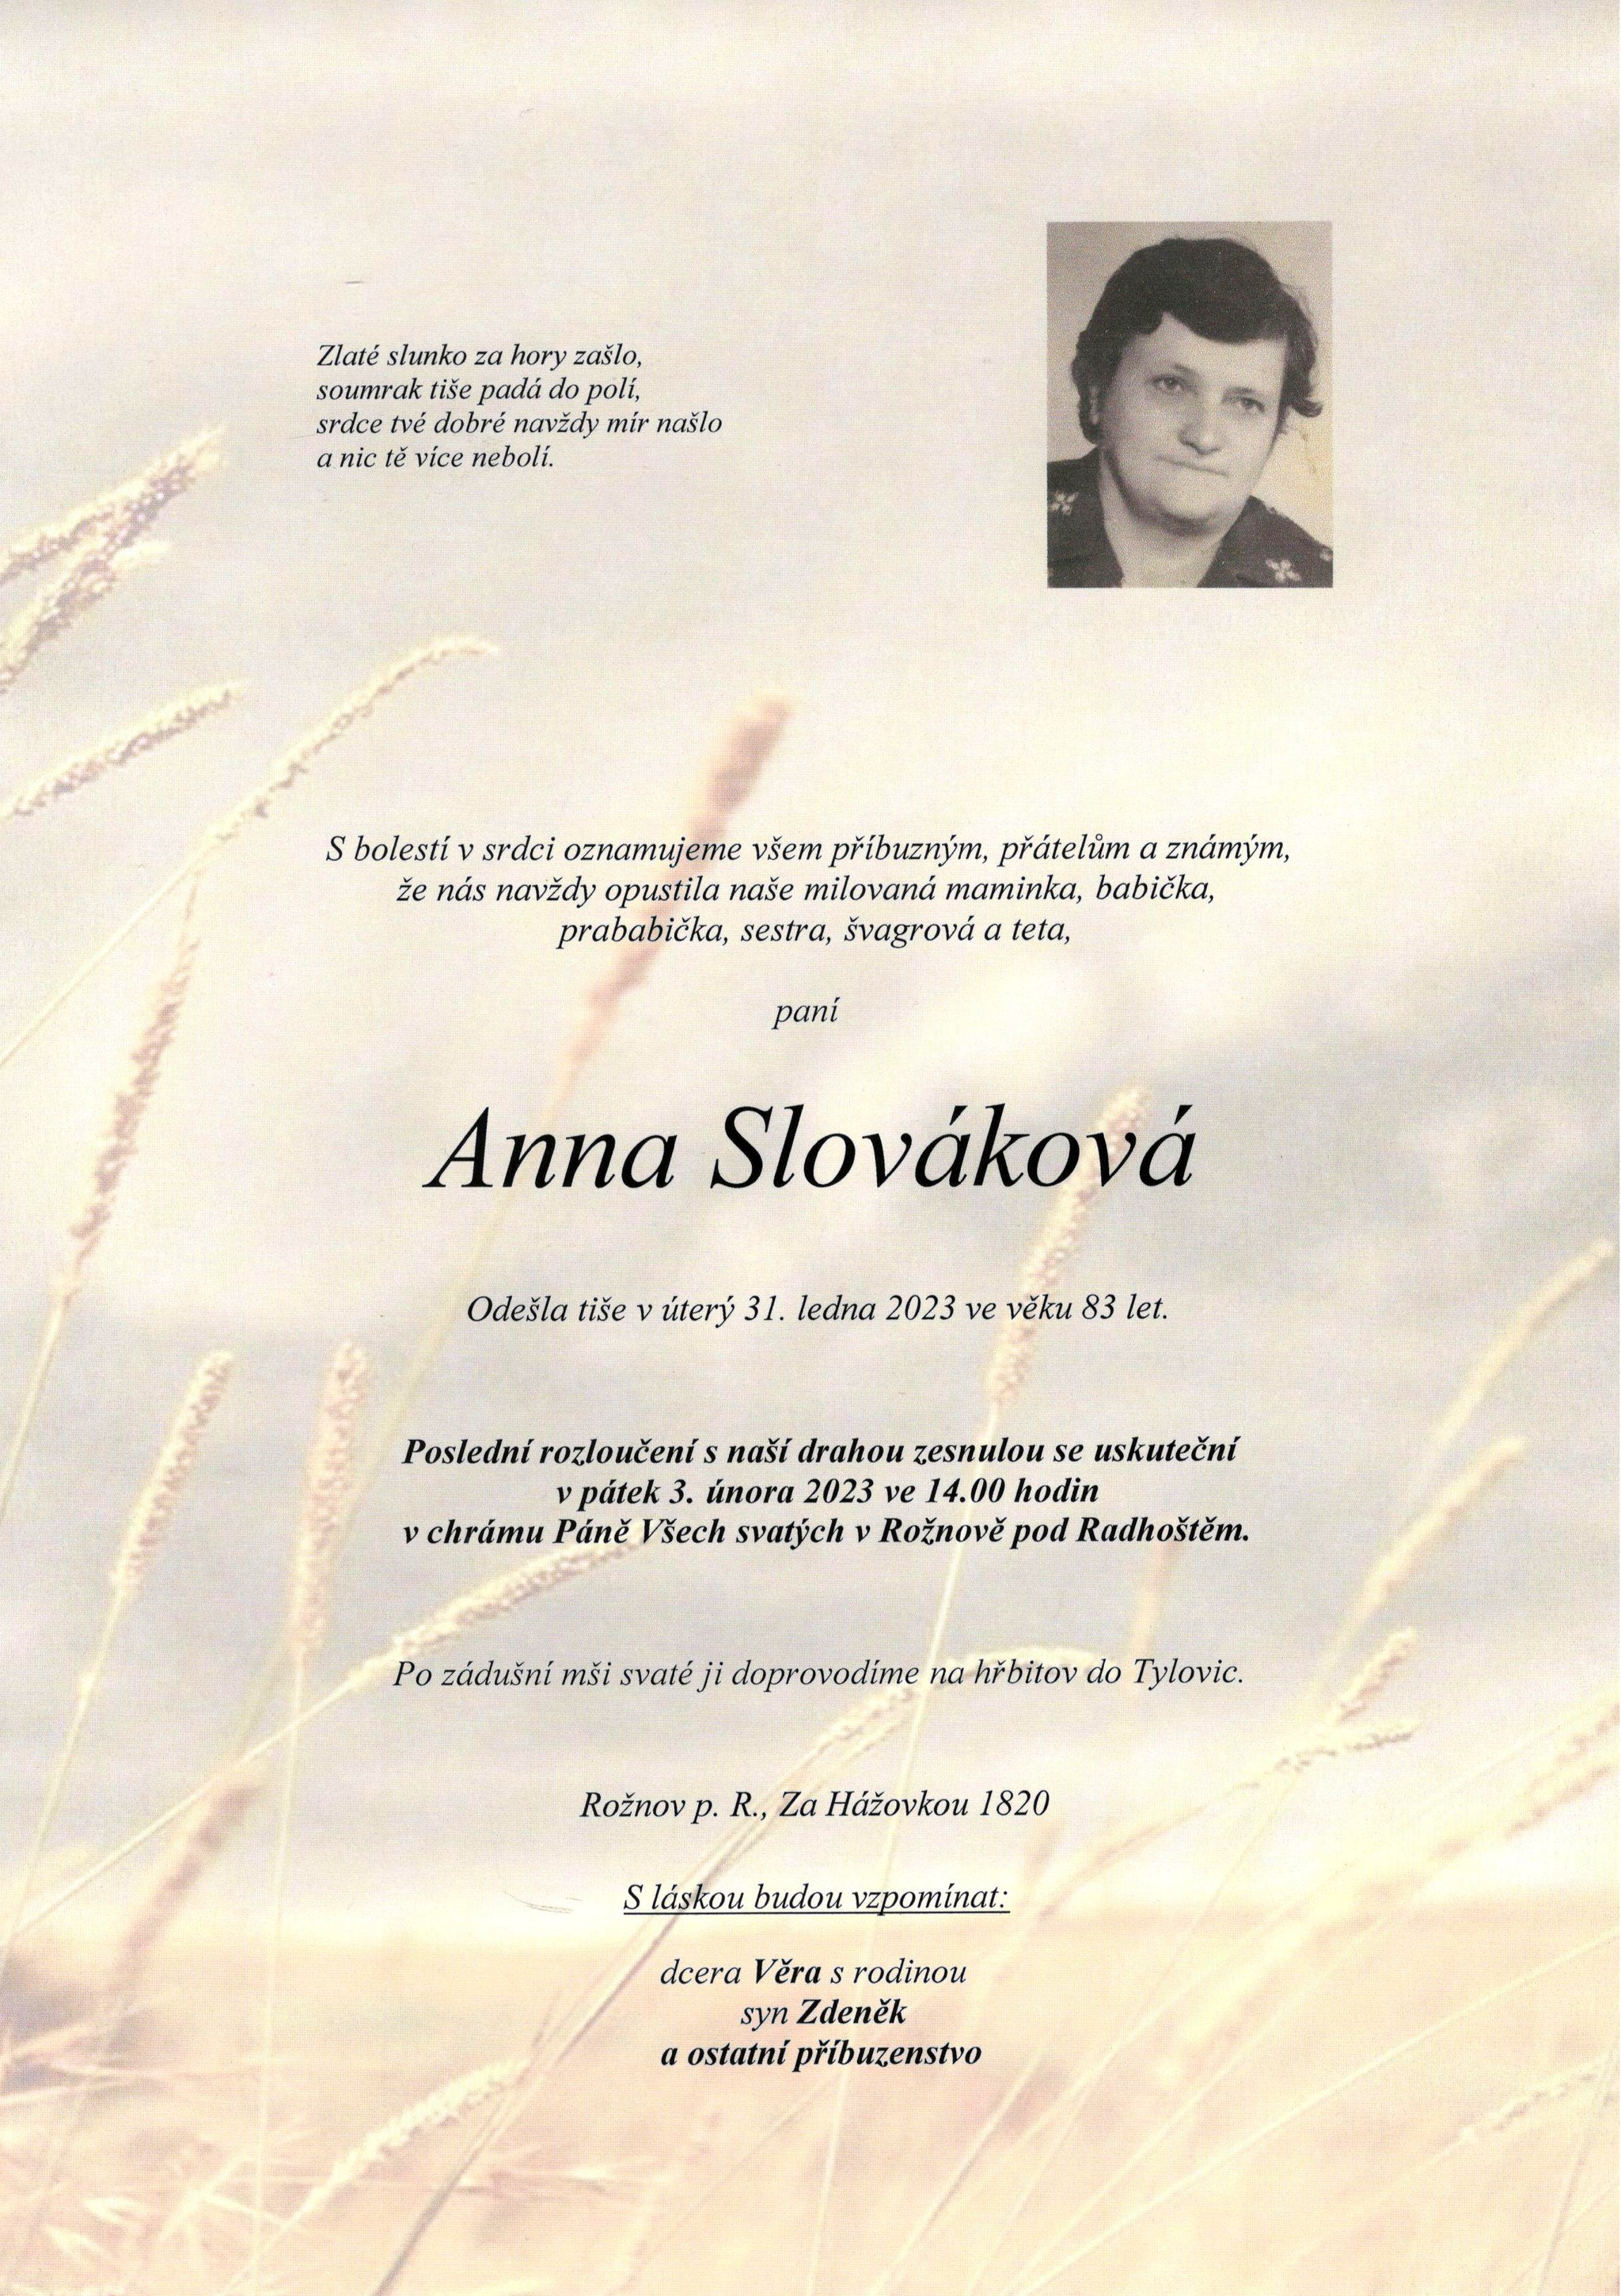 Anna Slováková